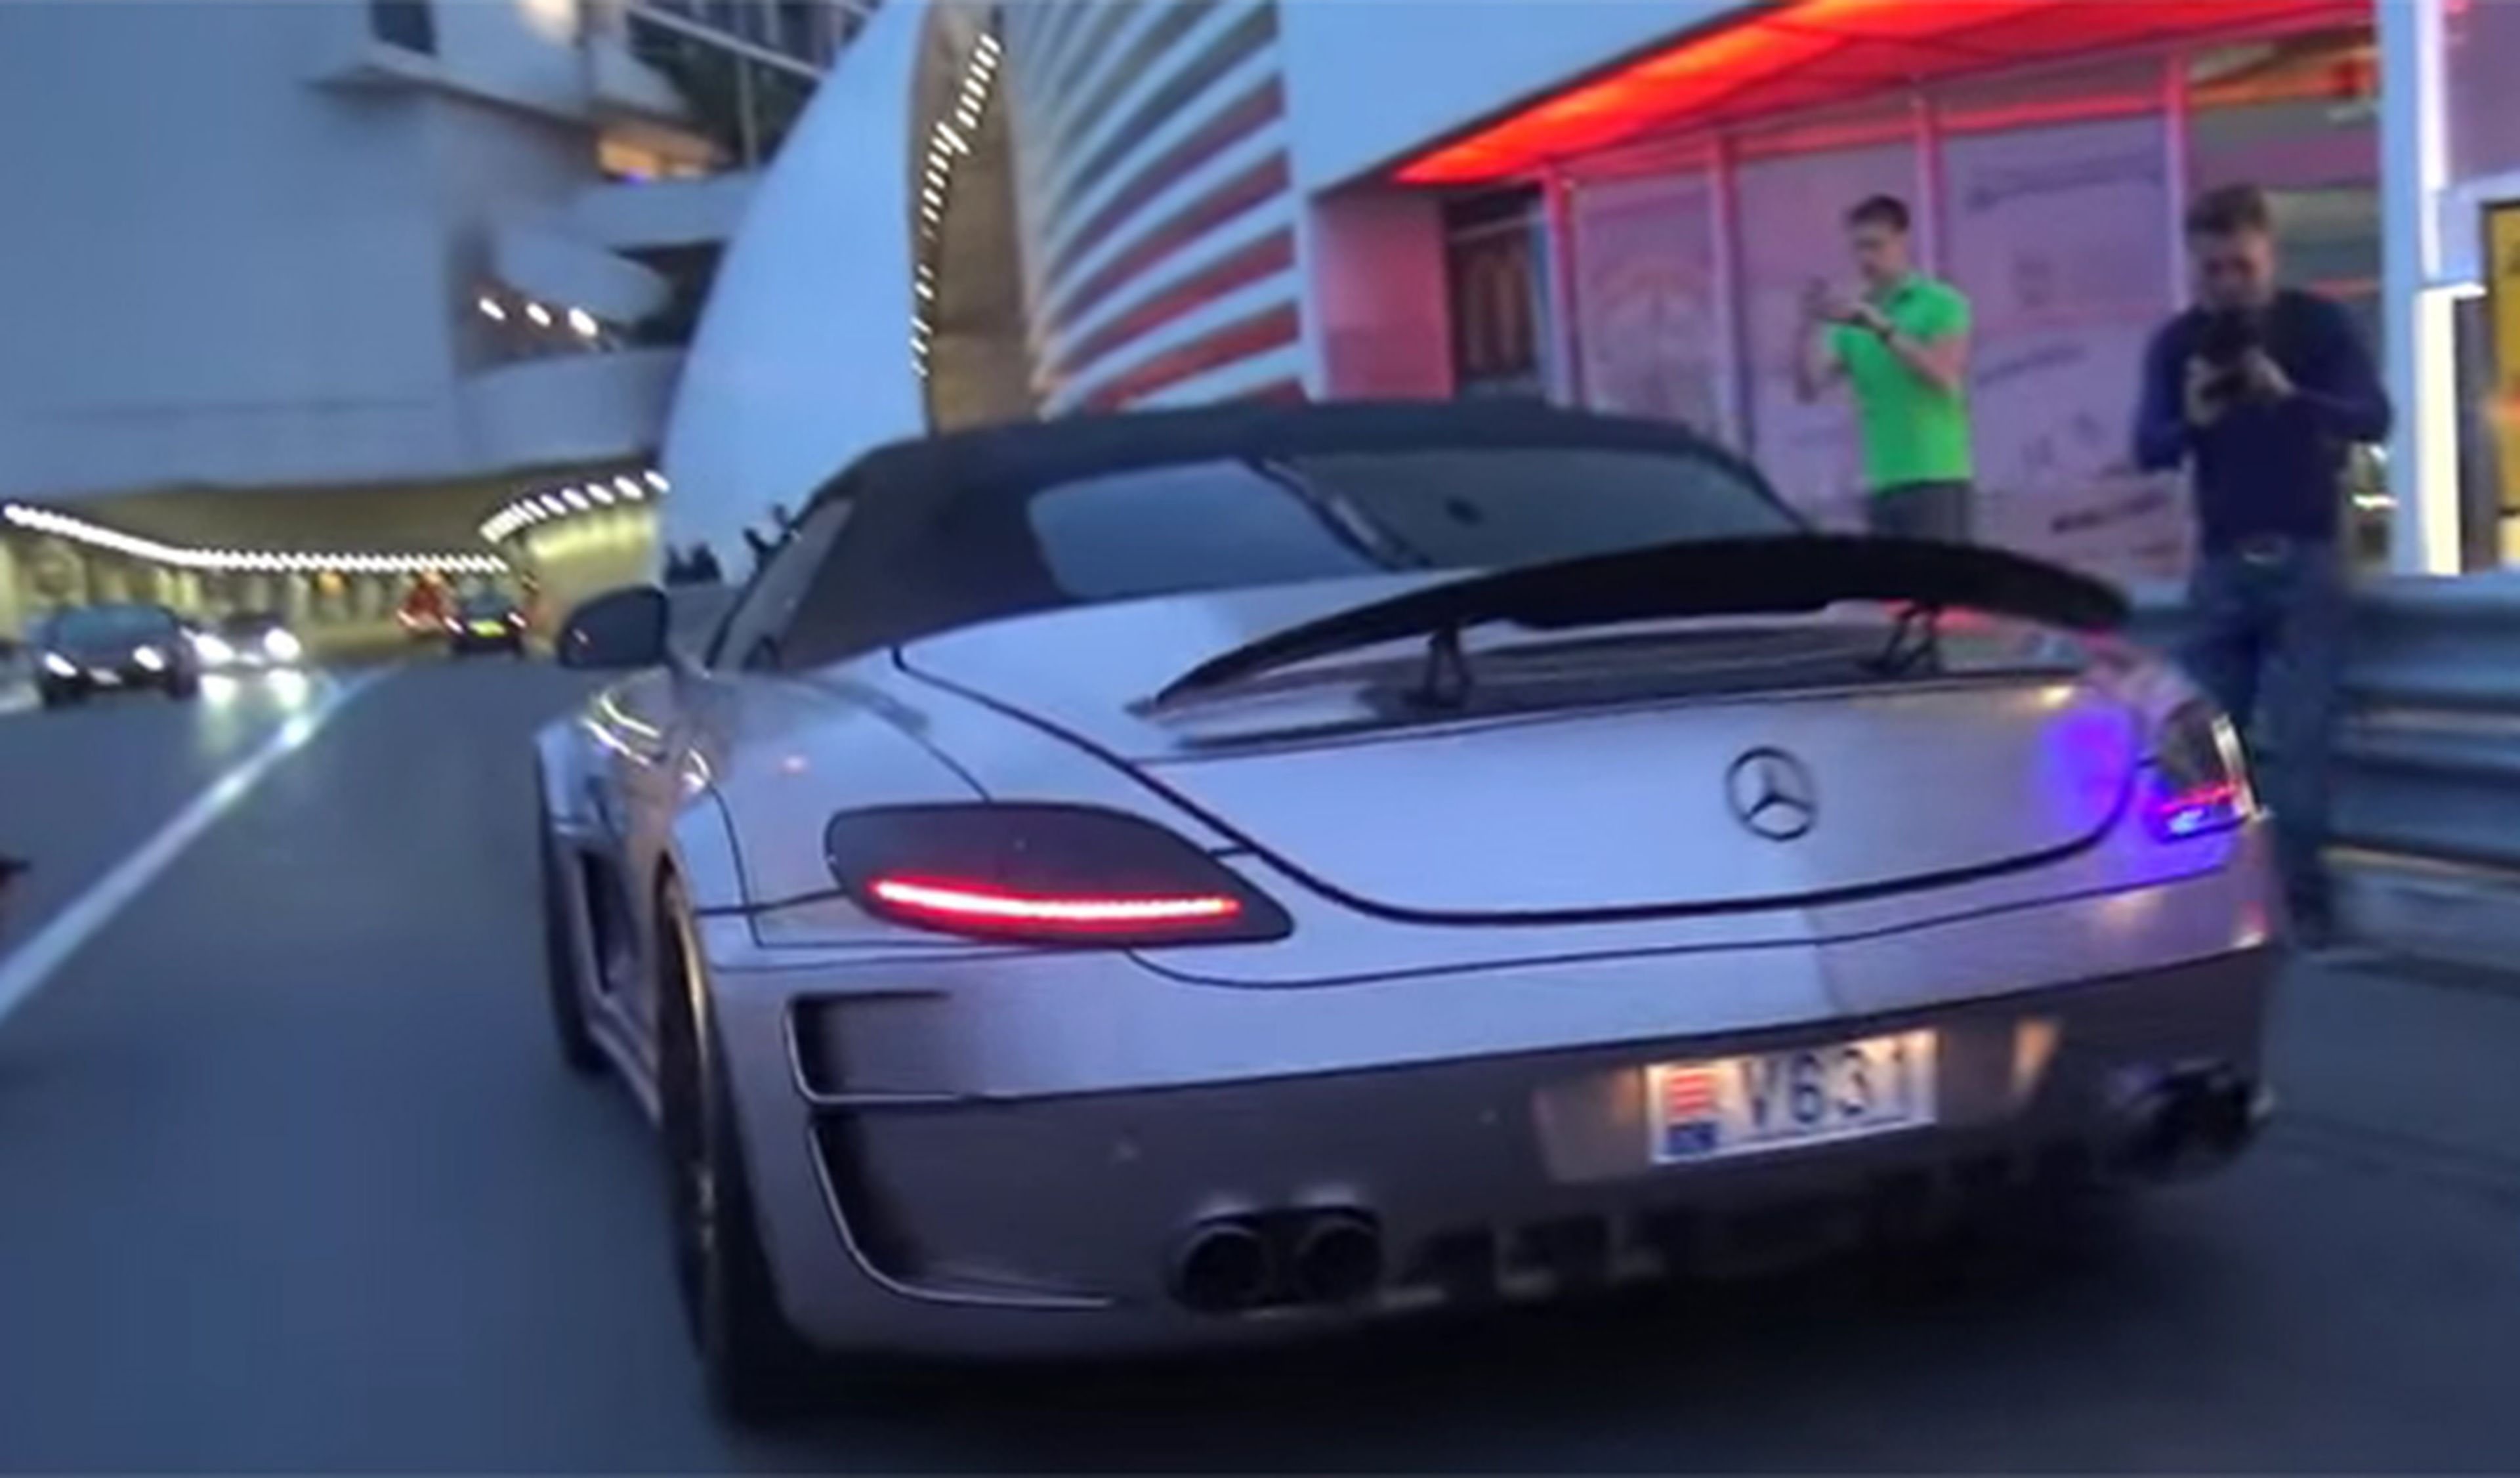 Escucha cómo suena este Mercedes en el túnel de Mónaco